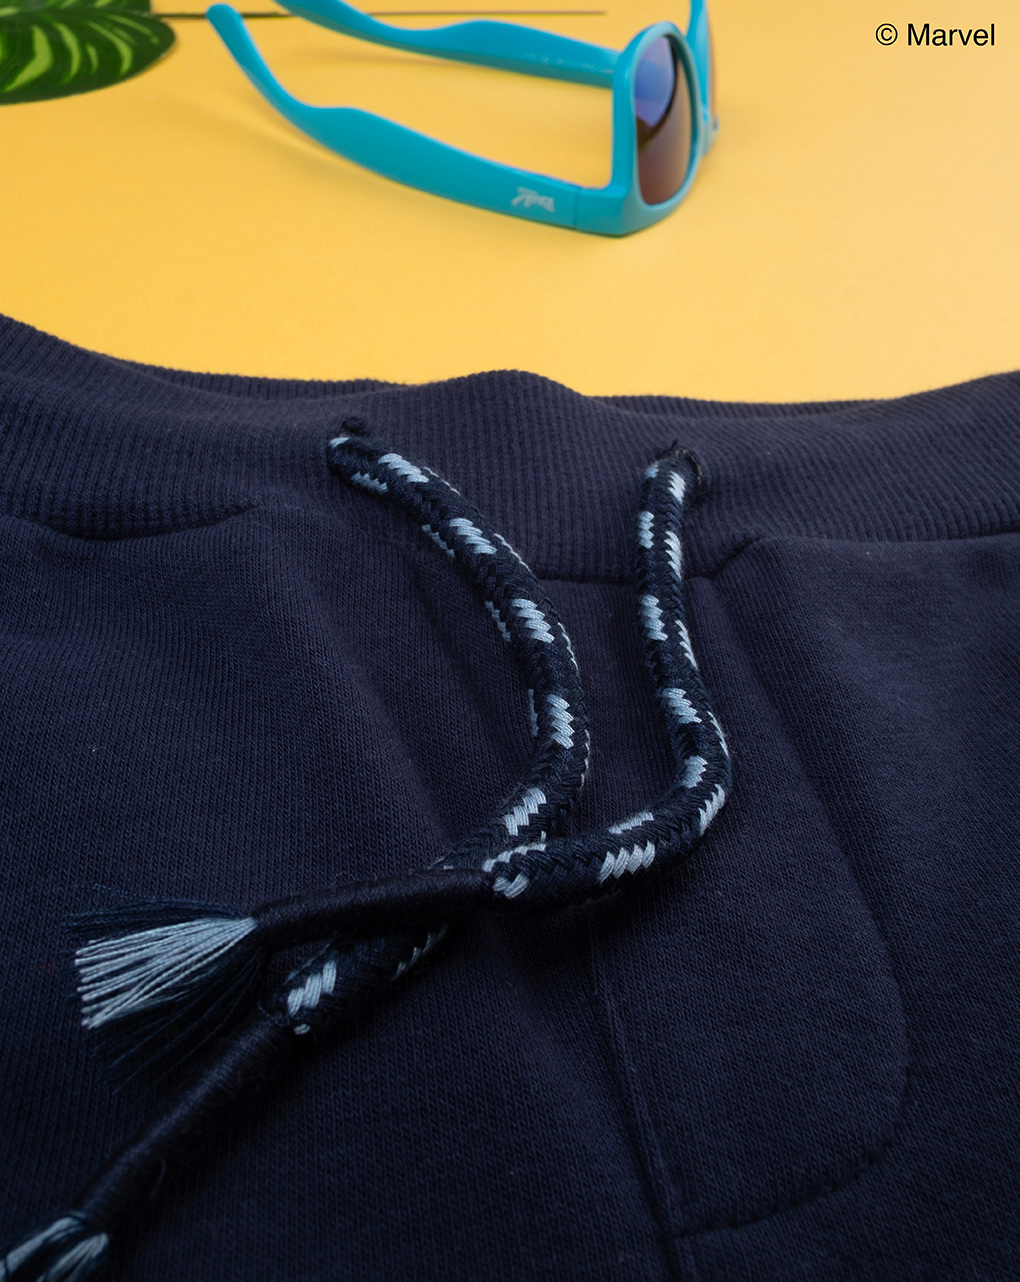 παιδικό παντελόνι φόρμας μπλε με τον spiderman για αγόρι - Prénatal